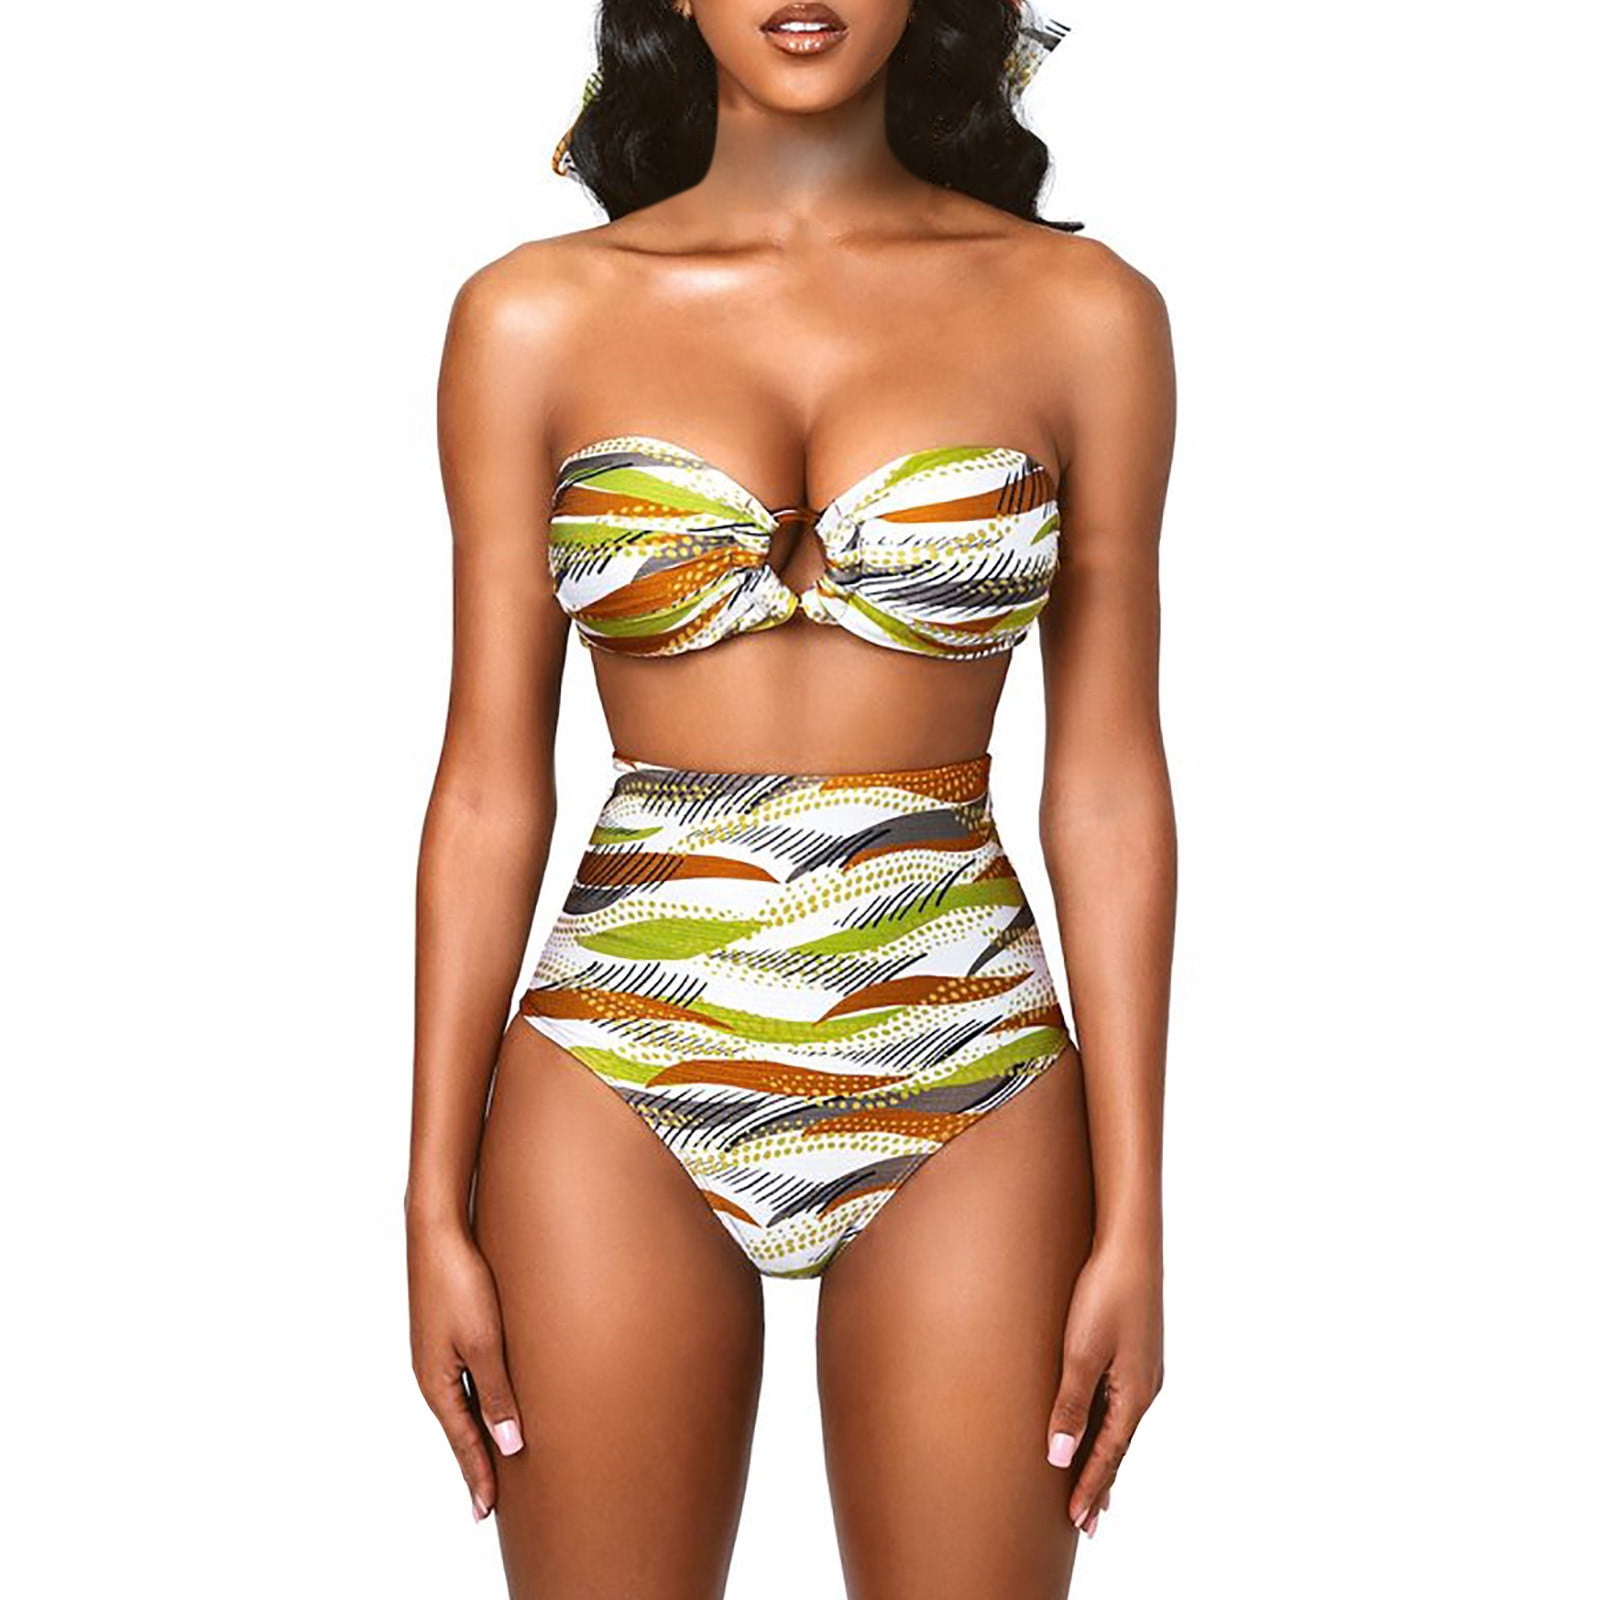 Womens Strappy Hollow Out Floral Print Swimwear Plus Size High Waist Bikini 2 PCS Set 